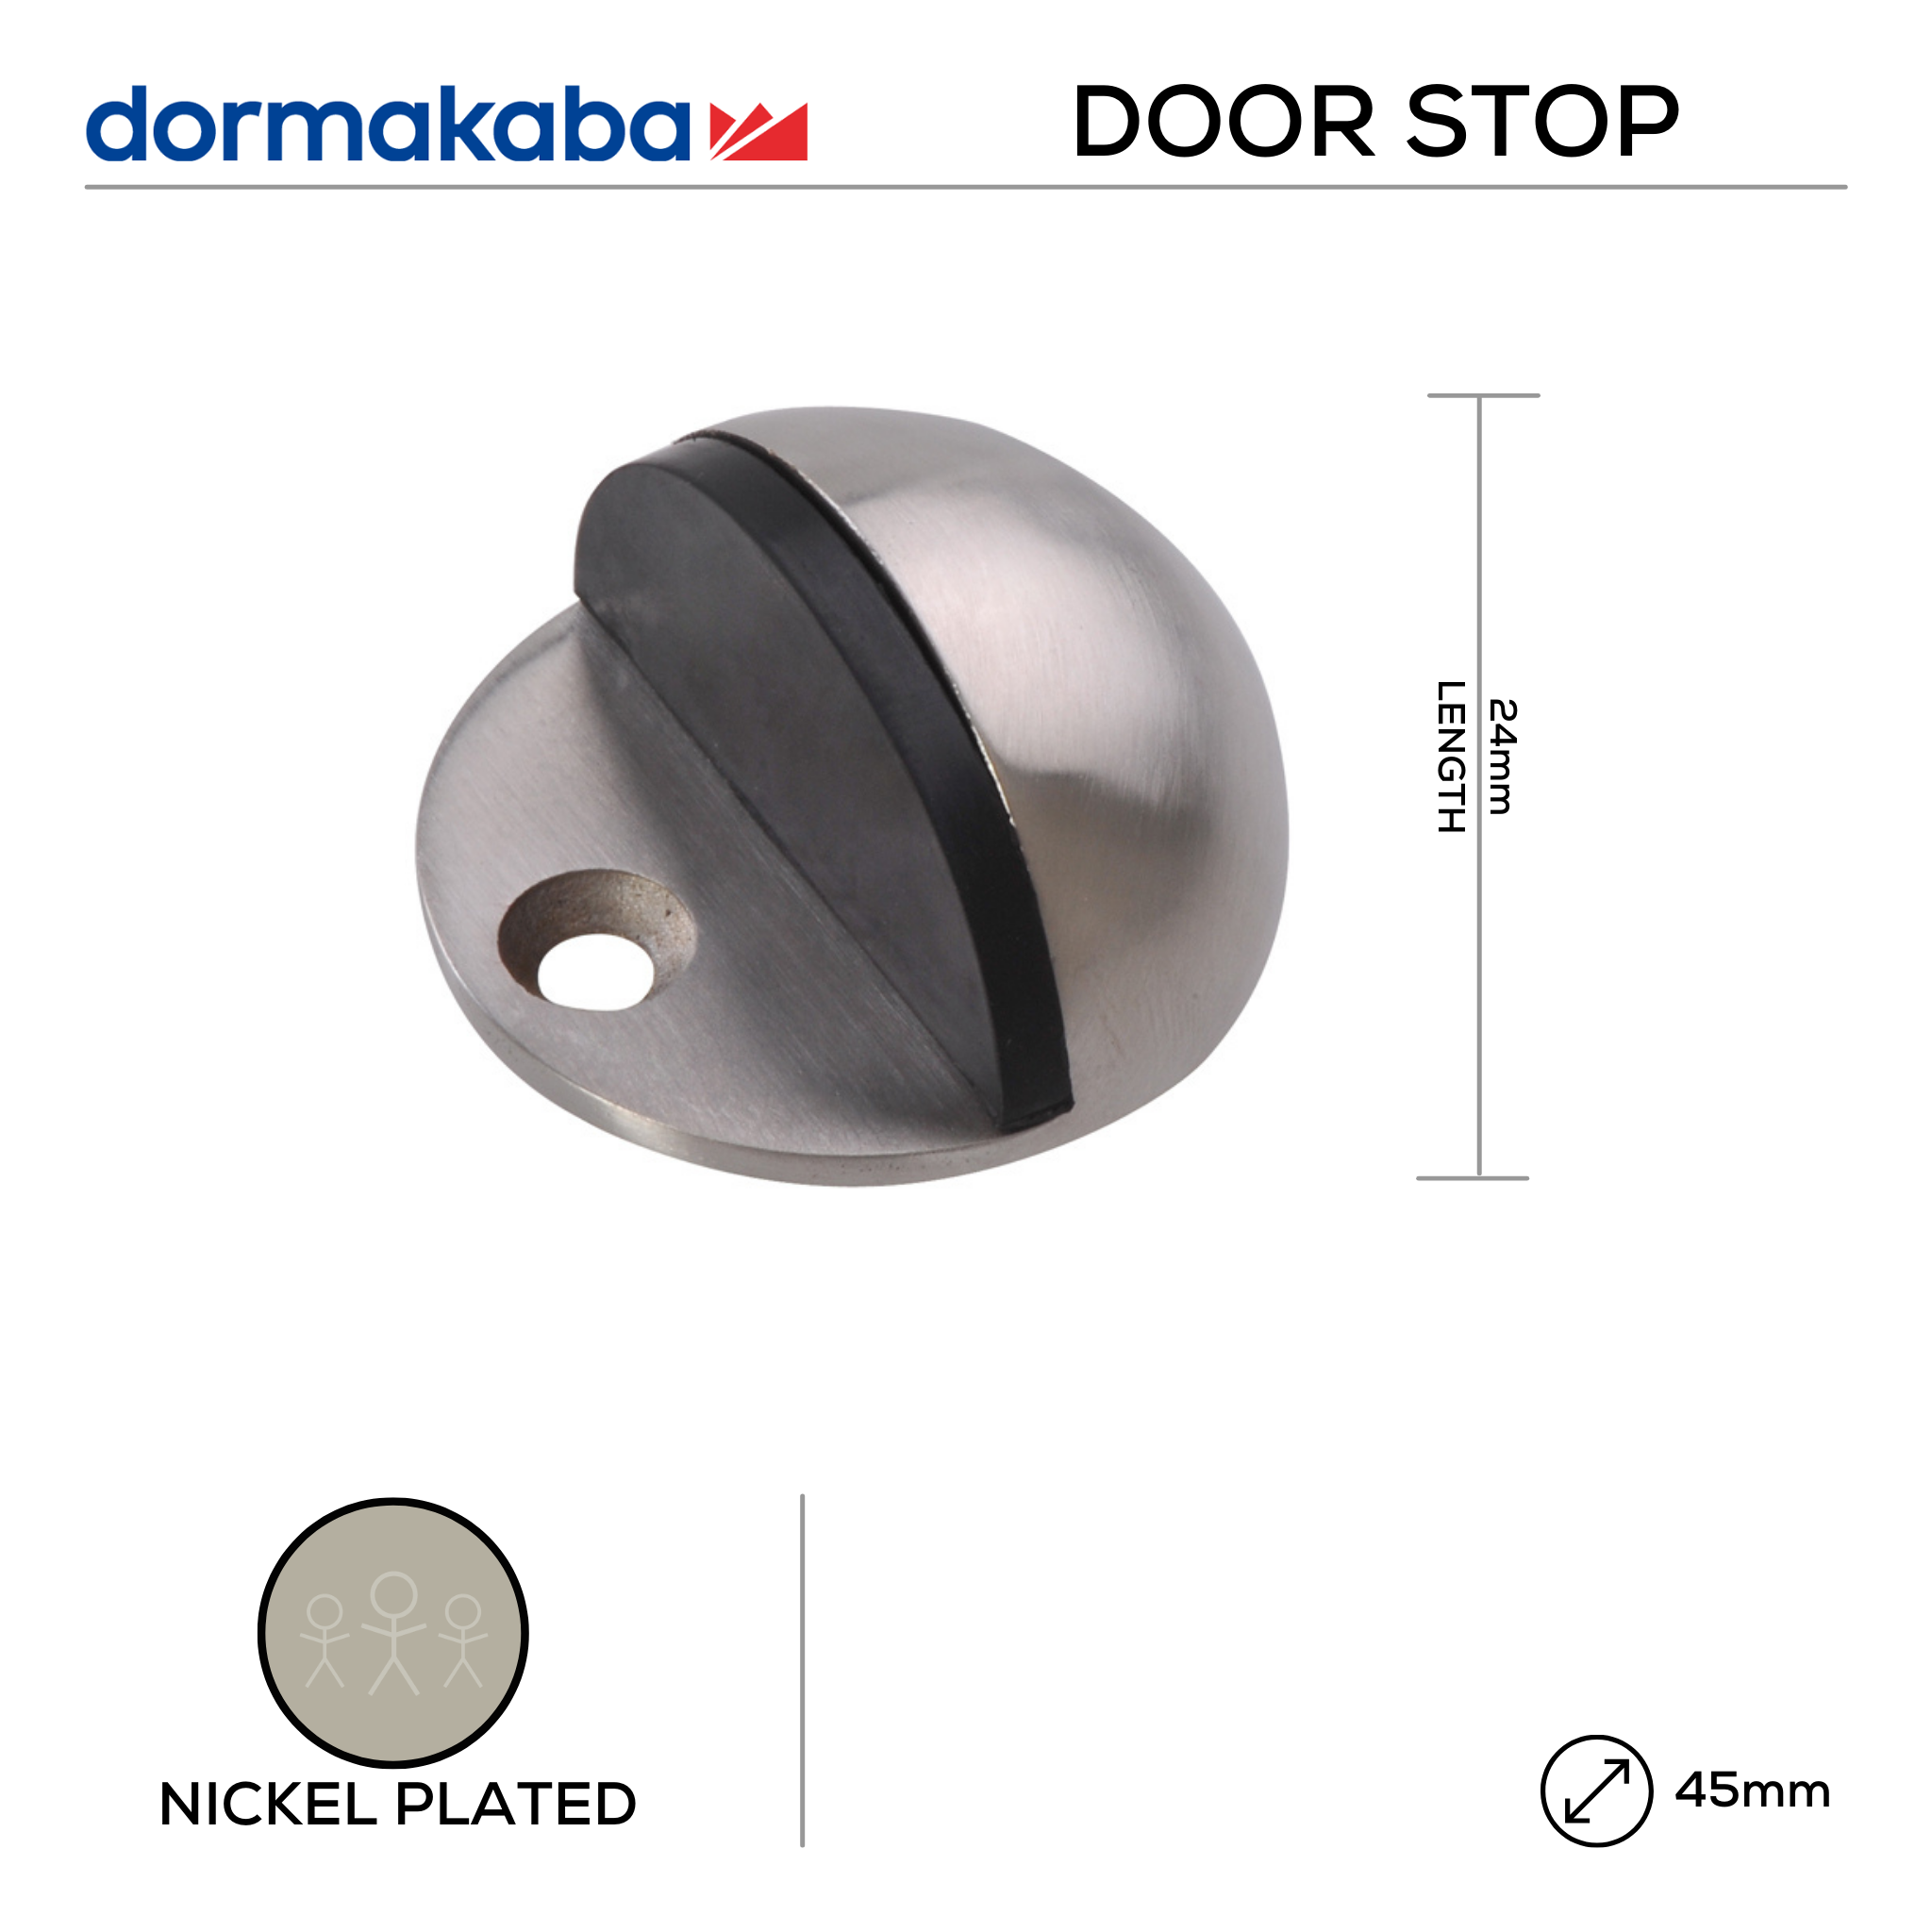 DDS-NP-018, Door Stop, Floor Mounted, Hooded, 24mm (l) x 45mm (Ø), Nickel, DORMAKABA